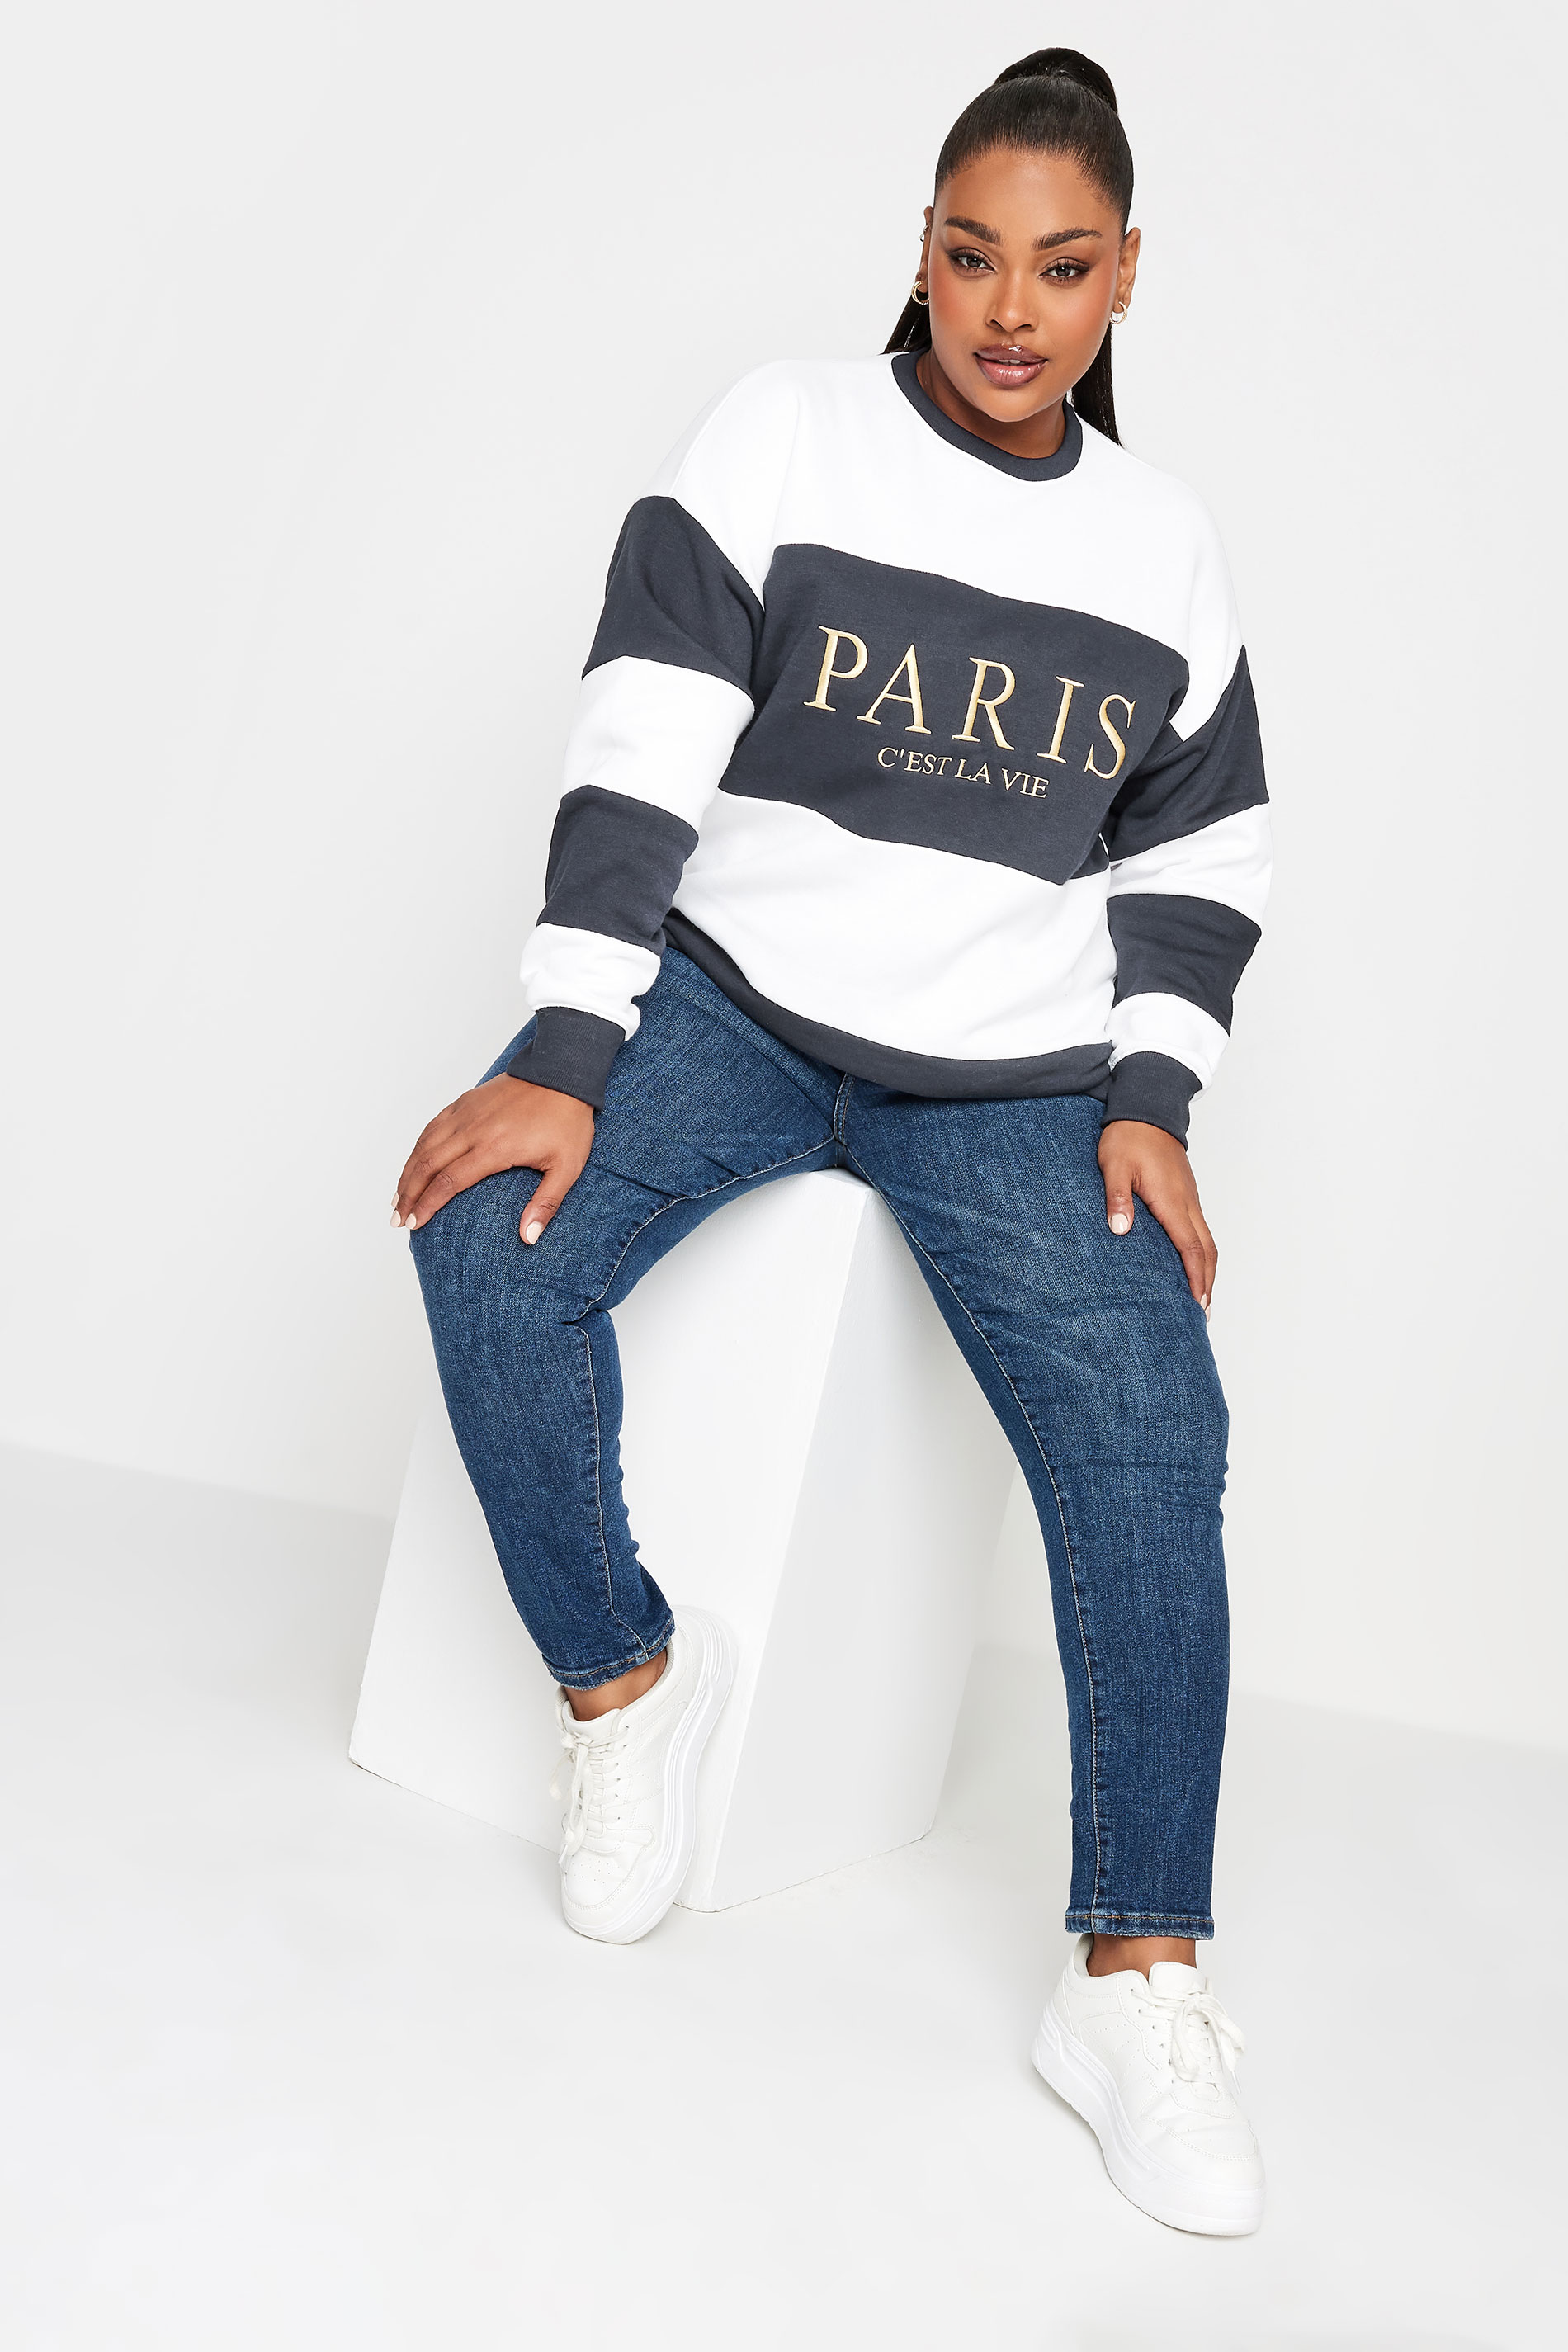 YOURS Plus Size Navy Blue 'Paris' Stripe Print Sweatshirt | Yours Clothing 2